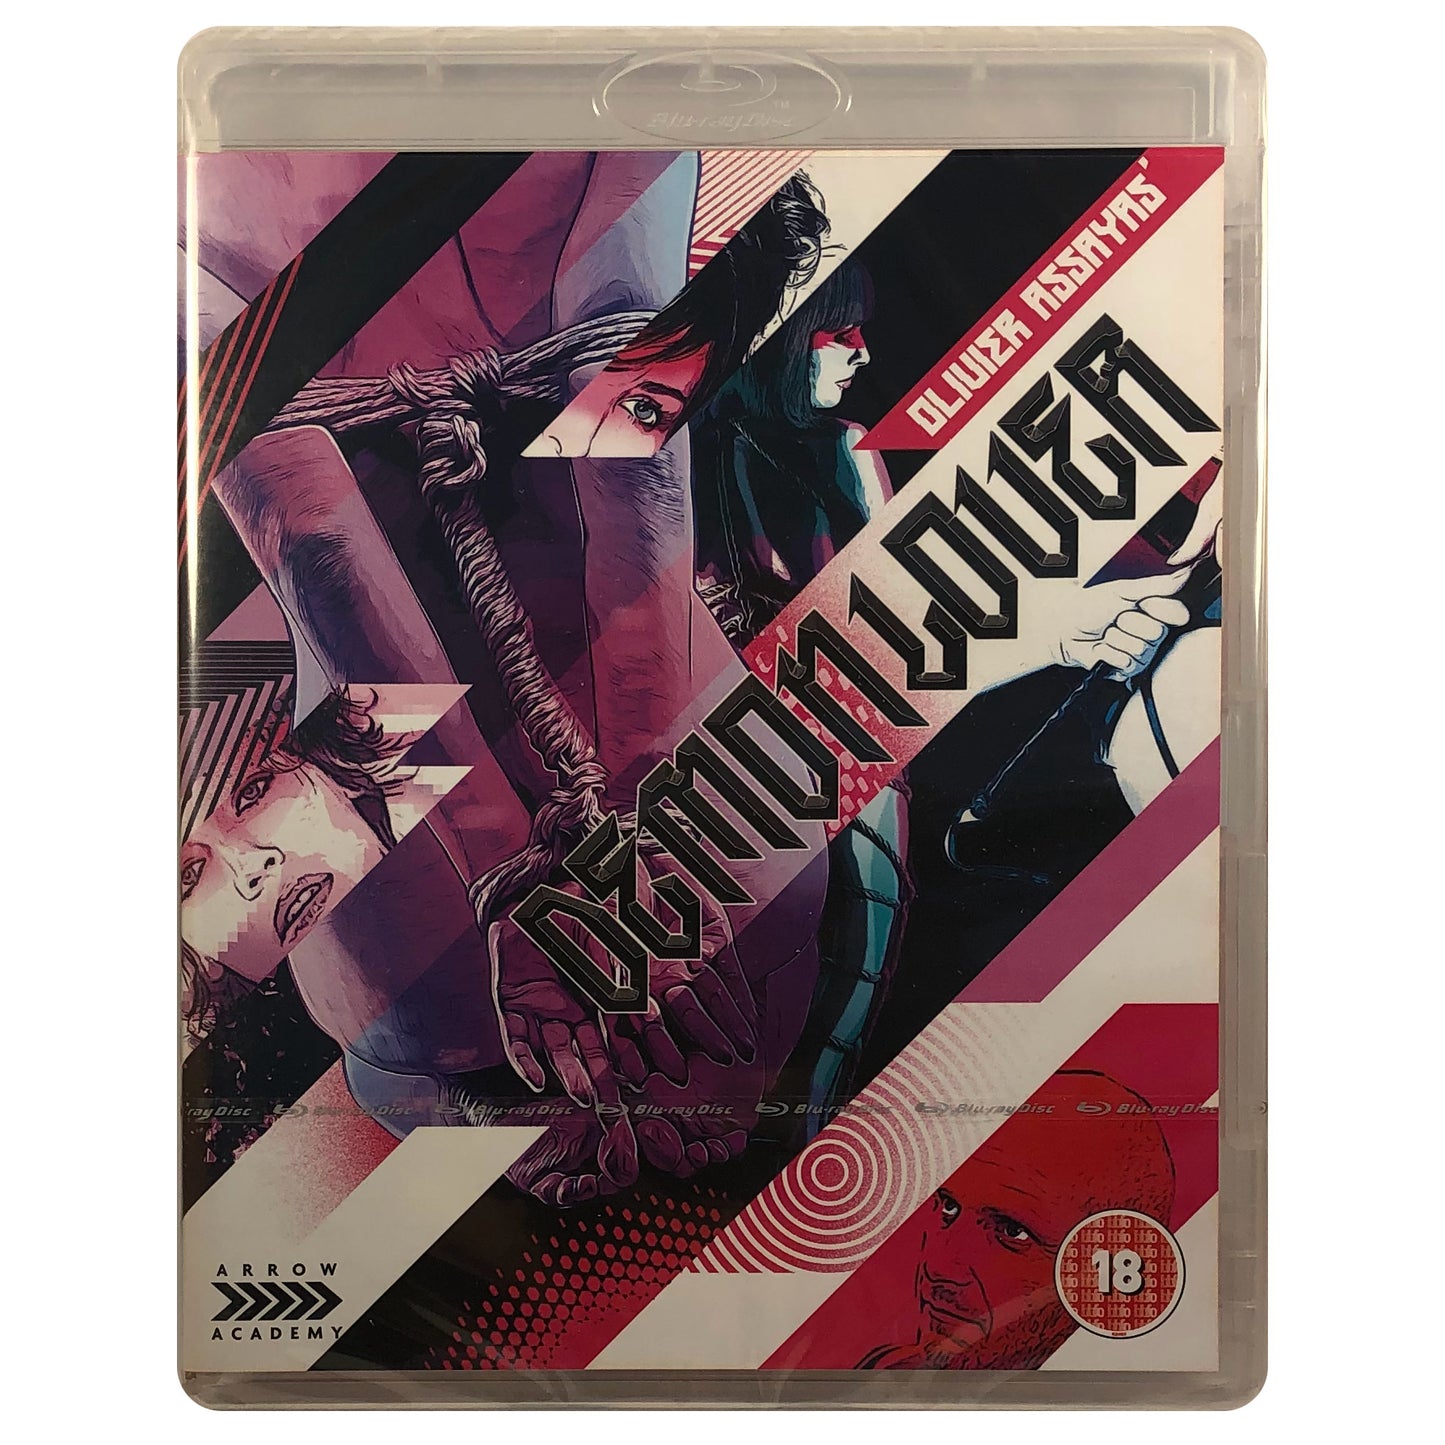 Demonlover Blu-Ray